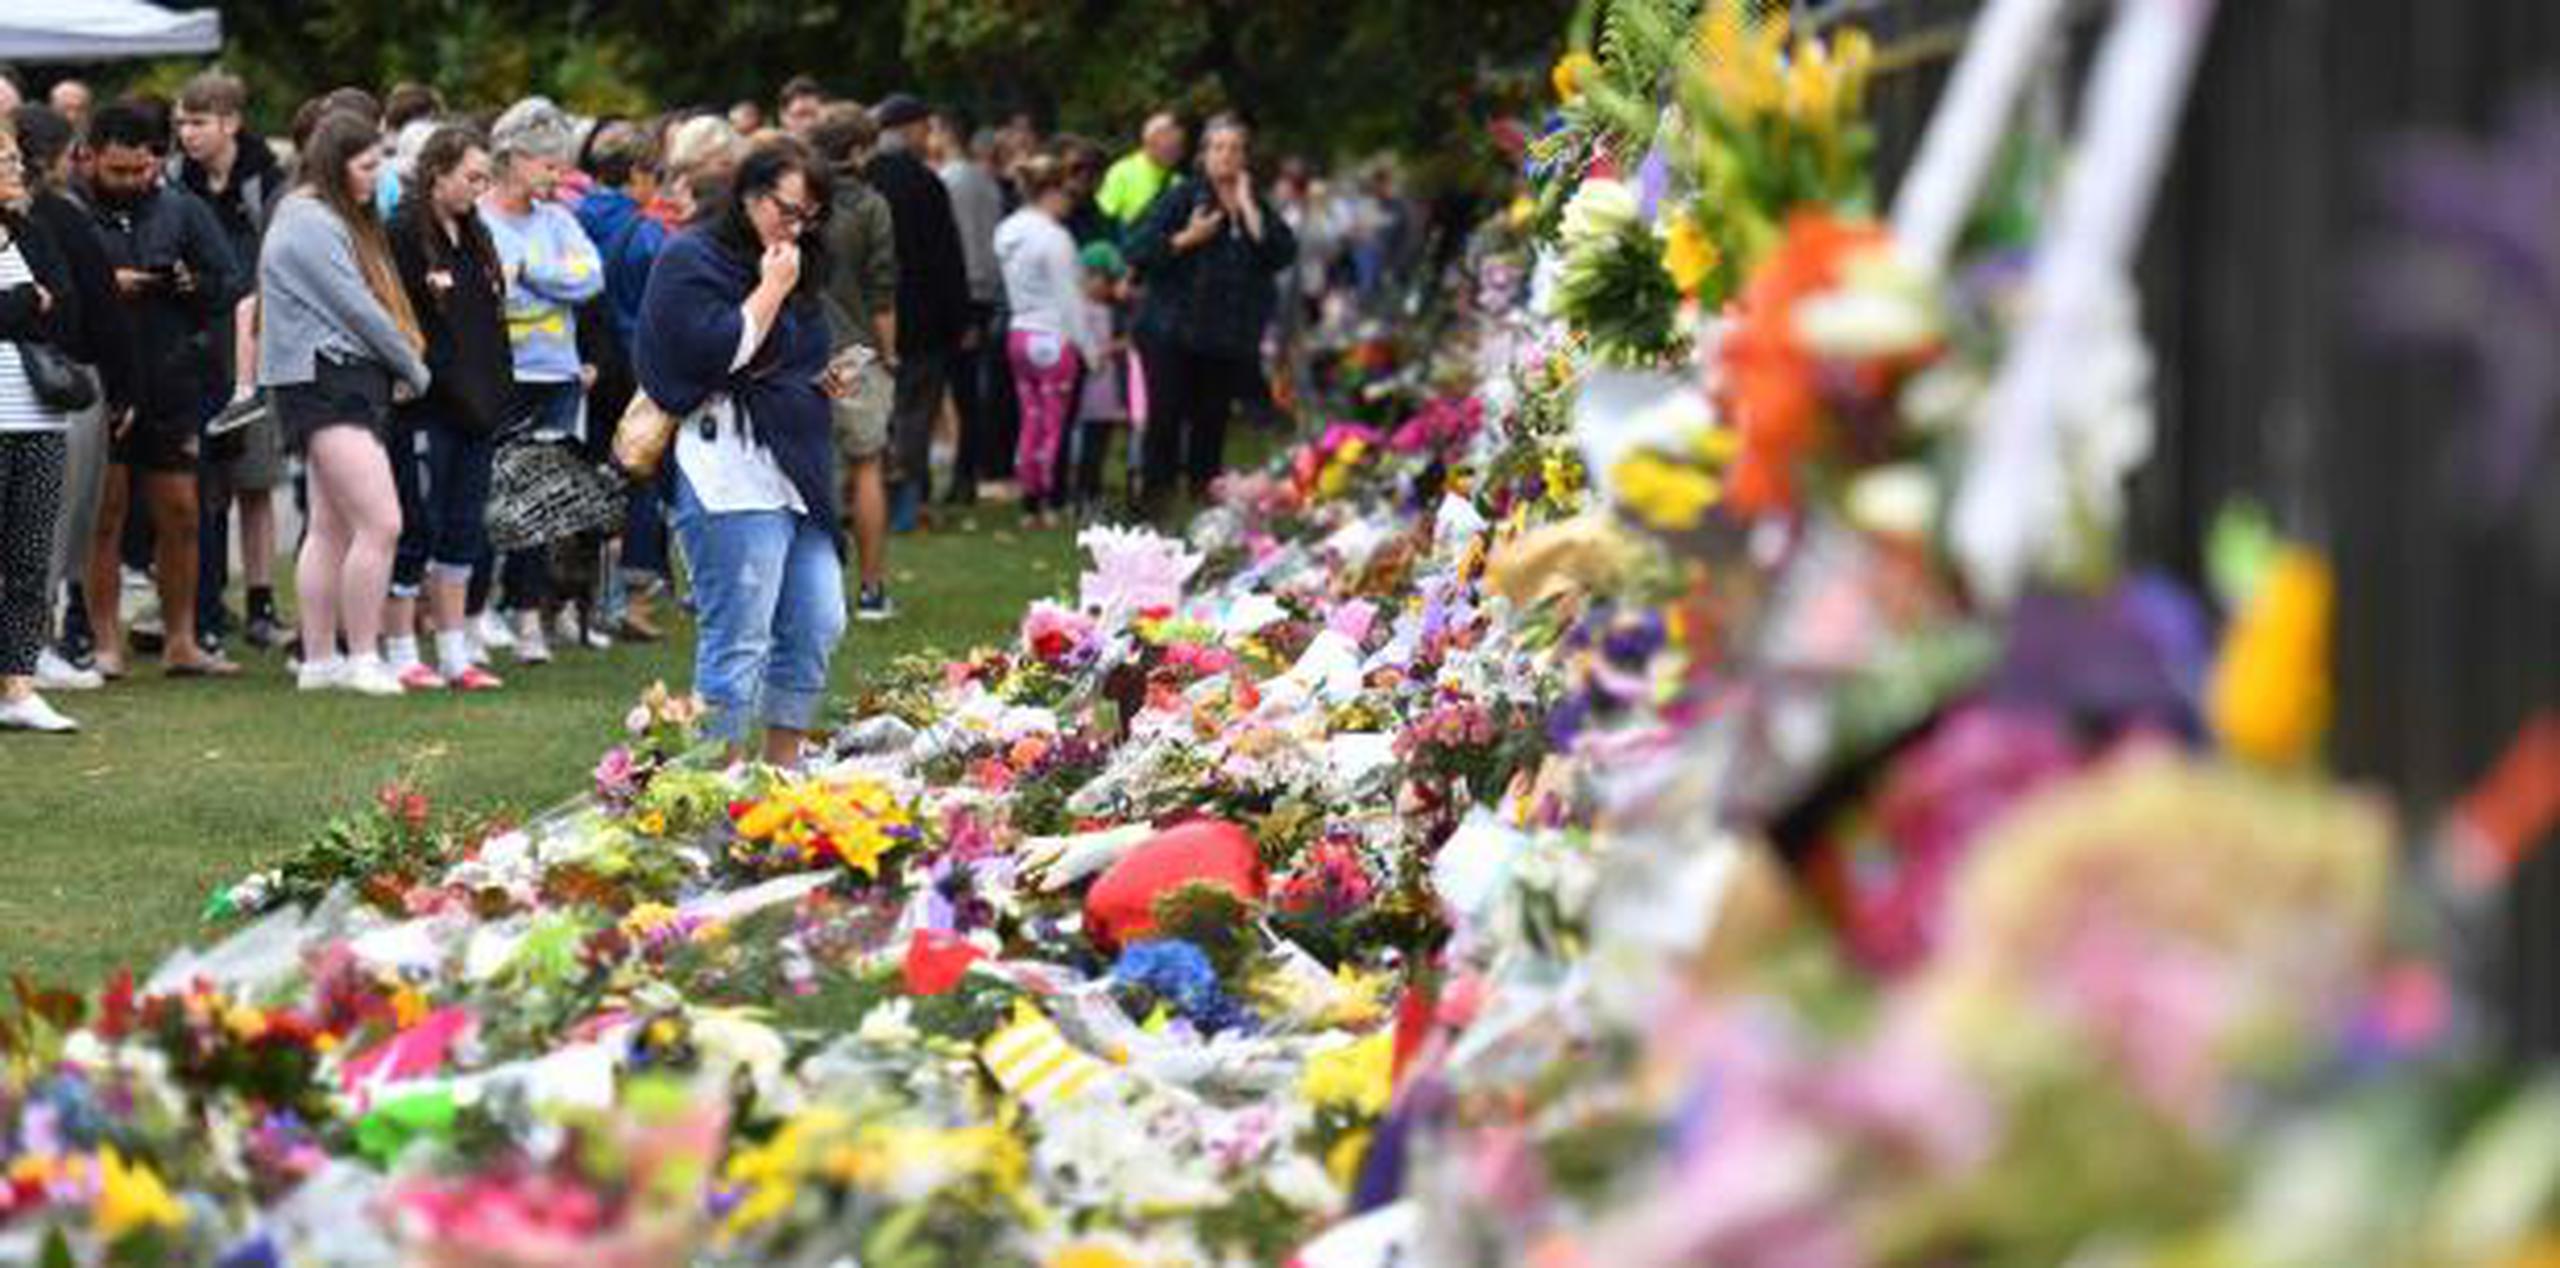 El pasado marzo, en Christchurch, 51 personas fueron asesinadas en un atentado supremacista. (EFE)